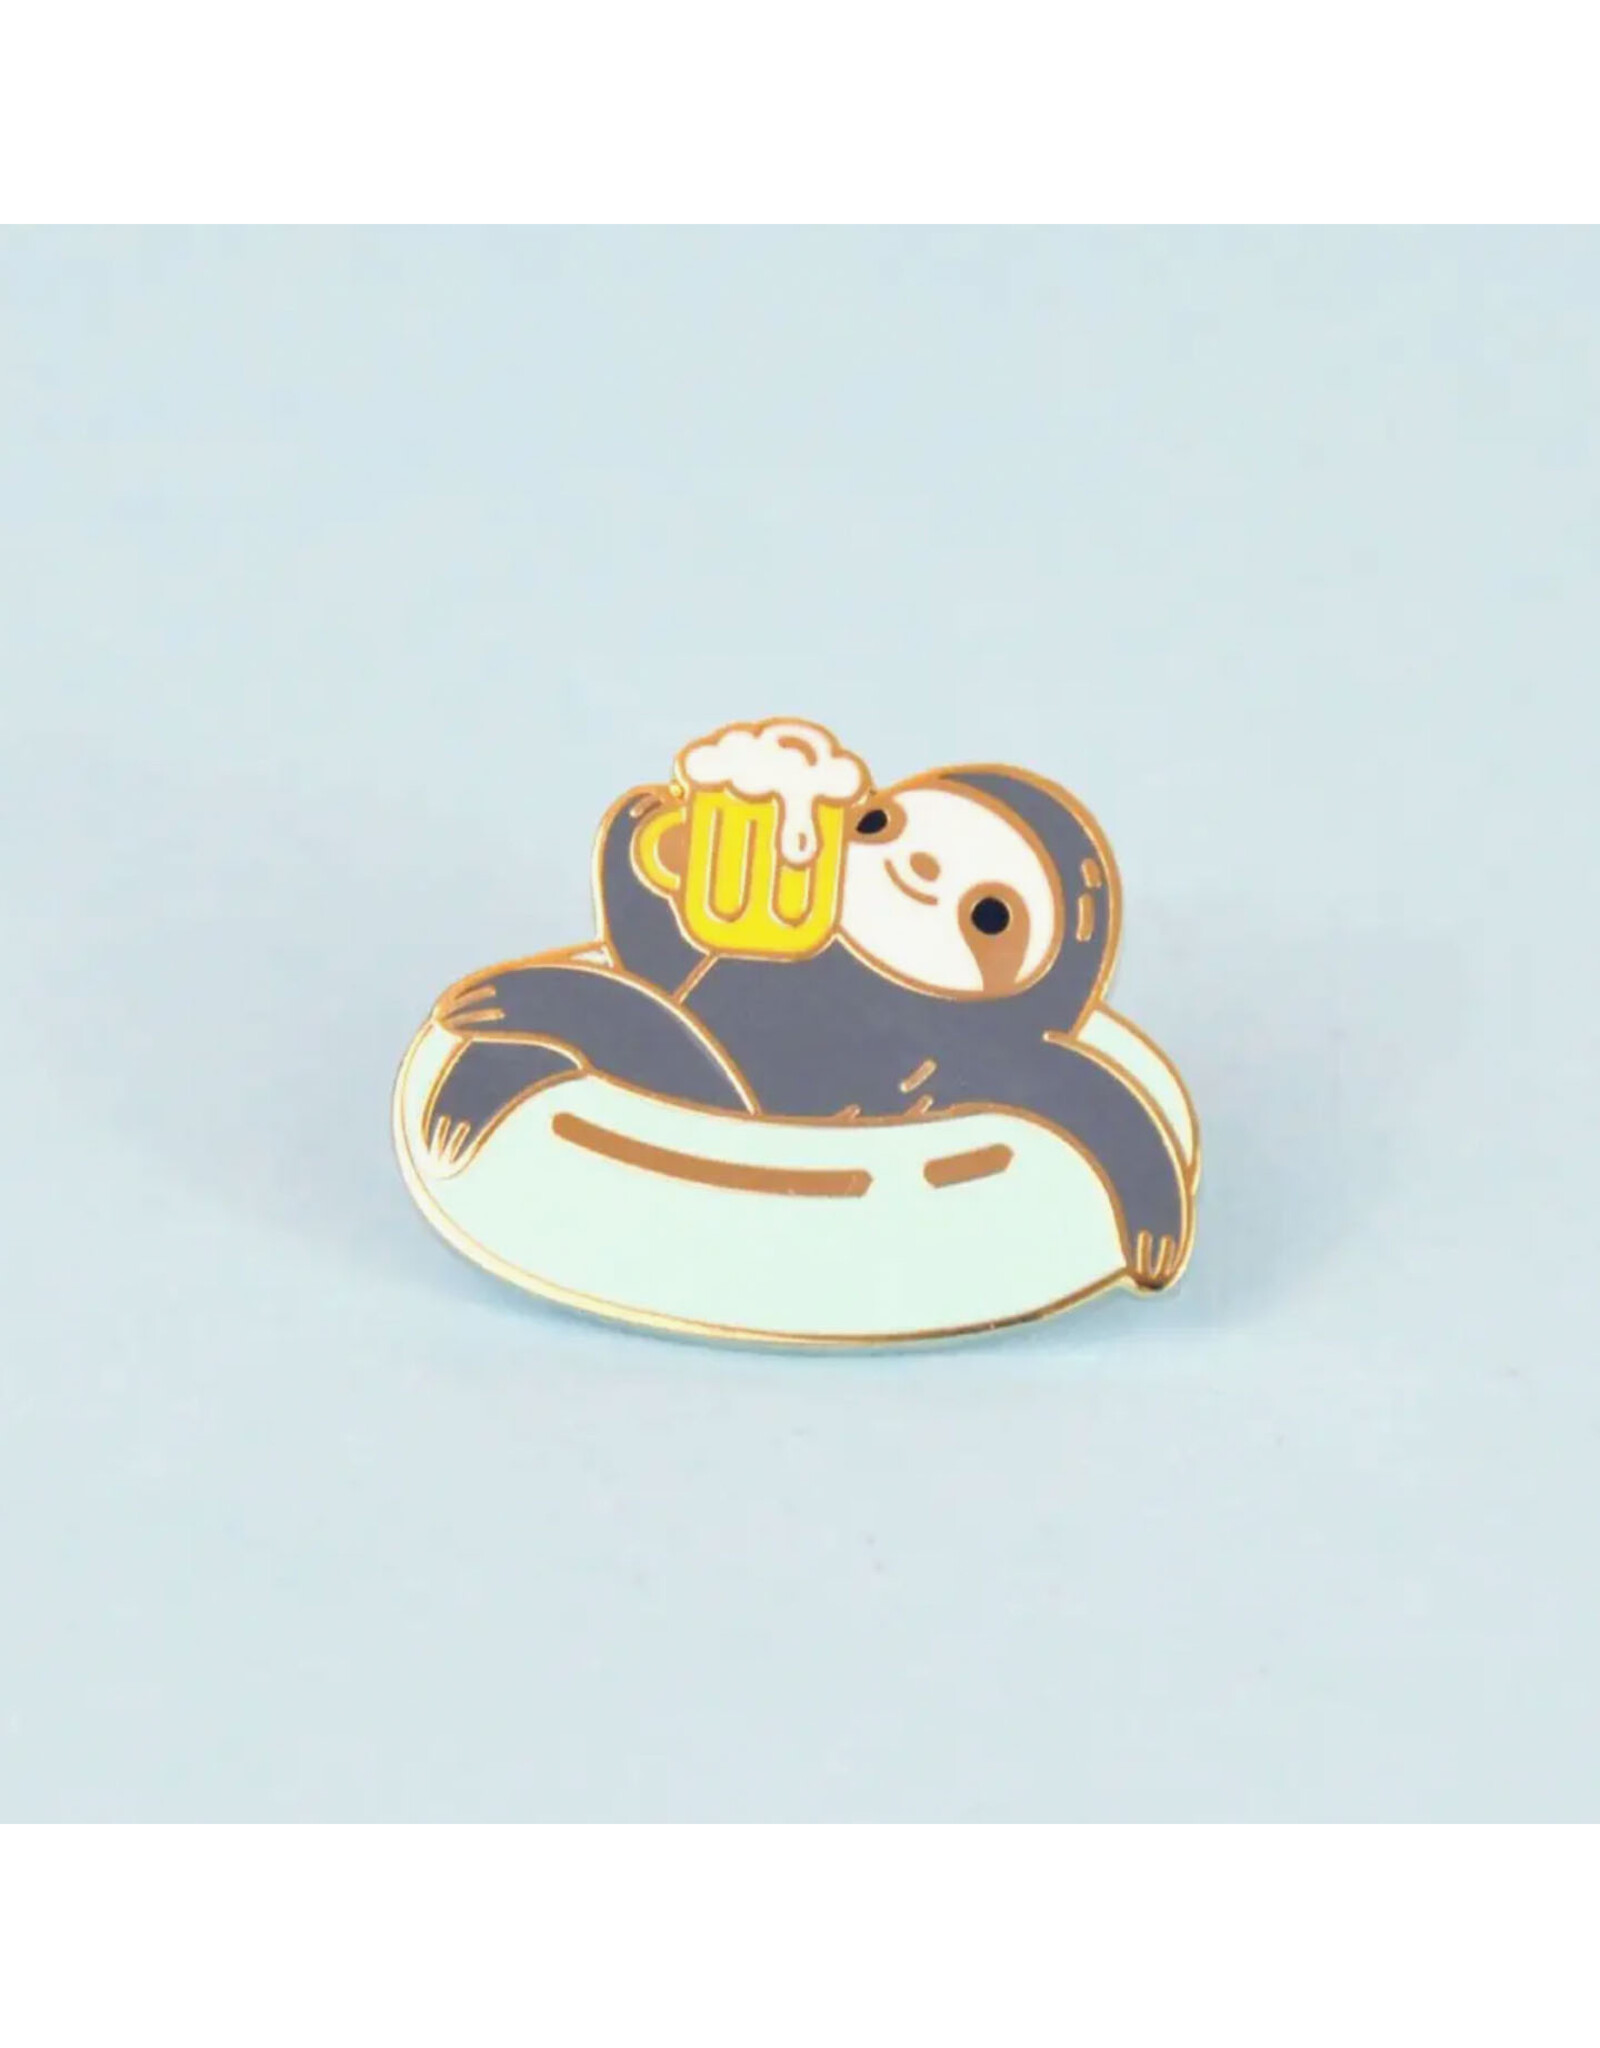 Cute Sloth With Beer Enamel Pin